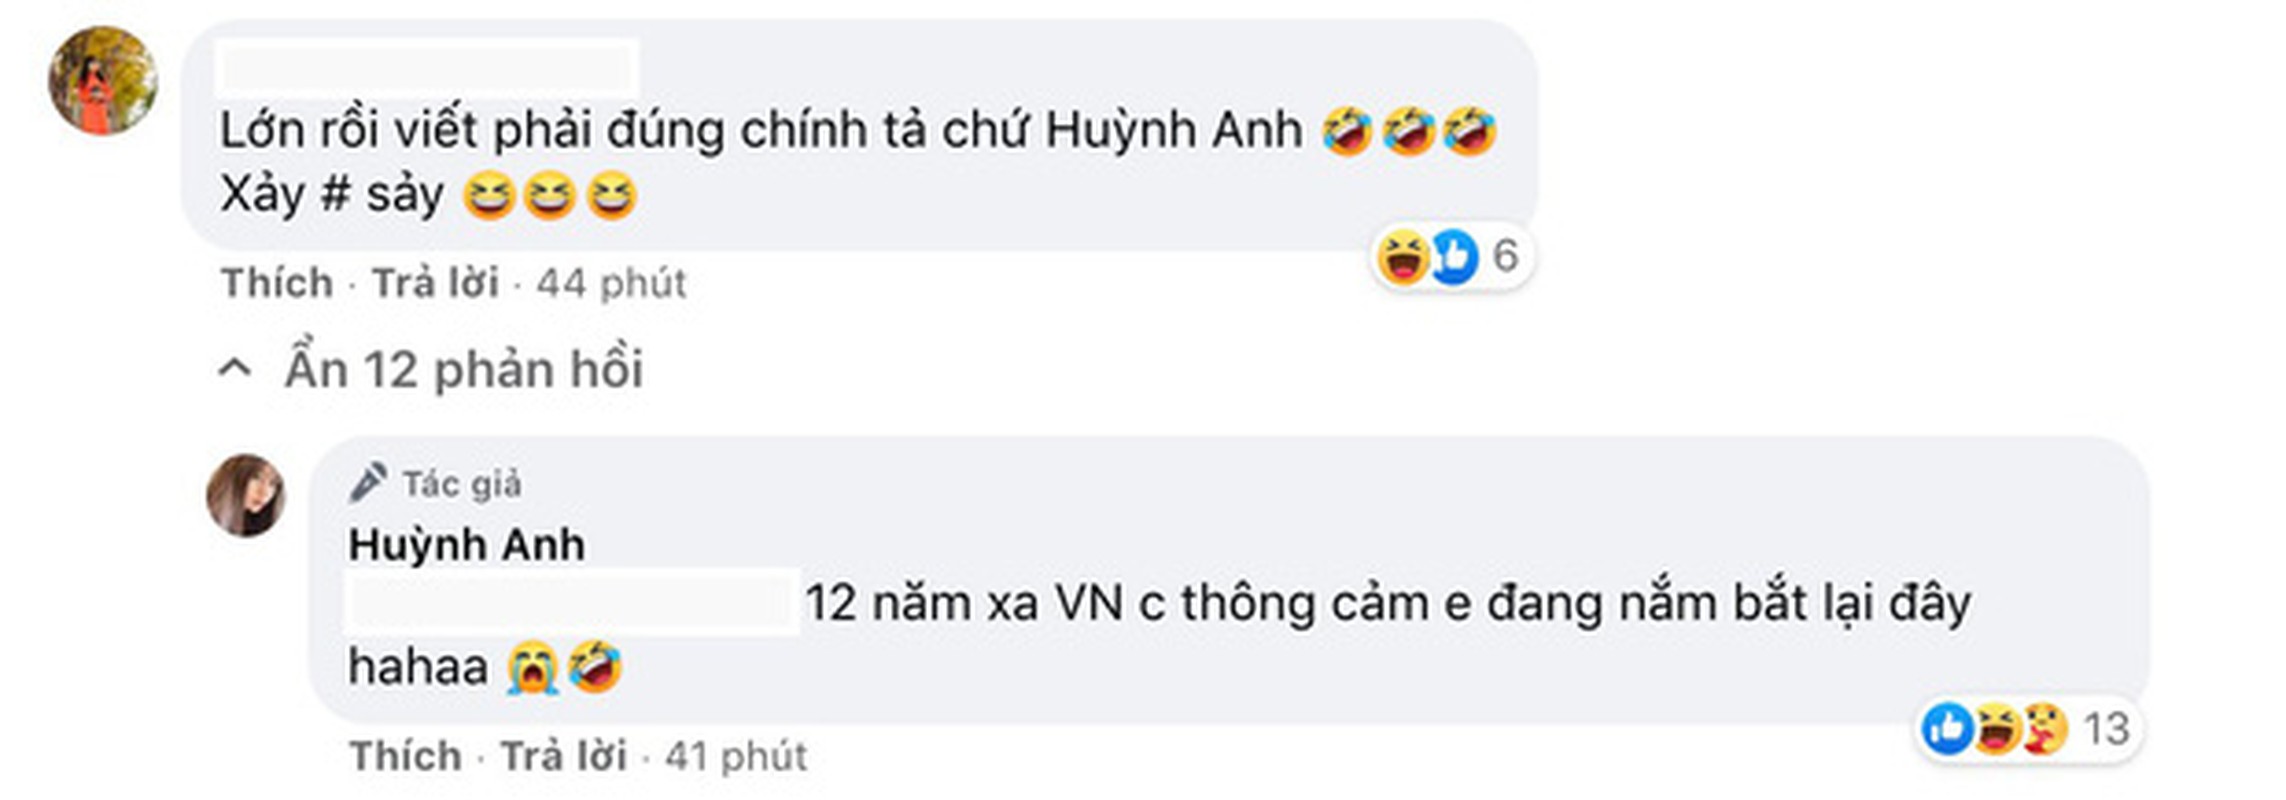 Viet sai chinh ta co ban, ban gai Quang Hai giai thich nhu dua-Hinh-4